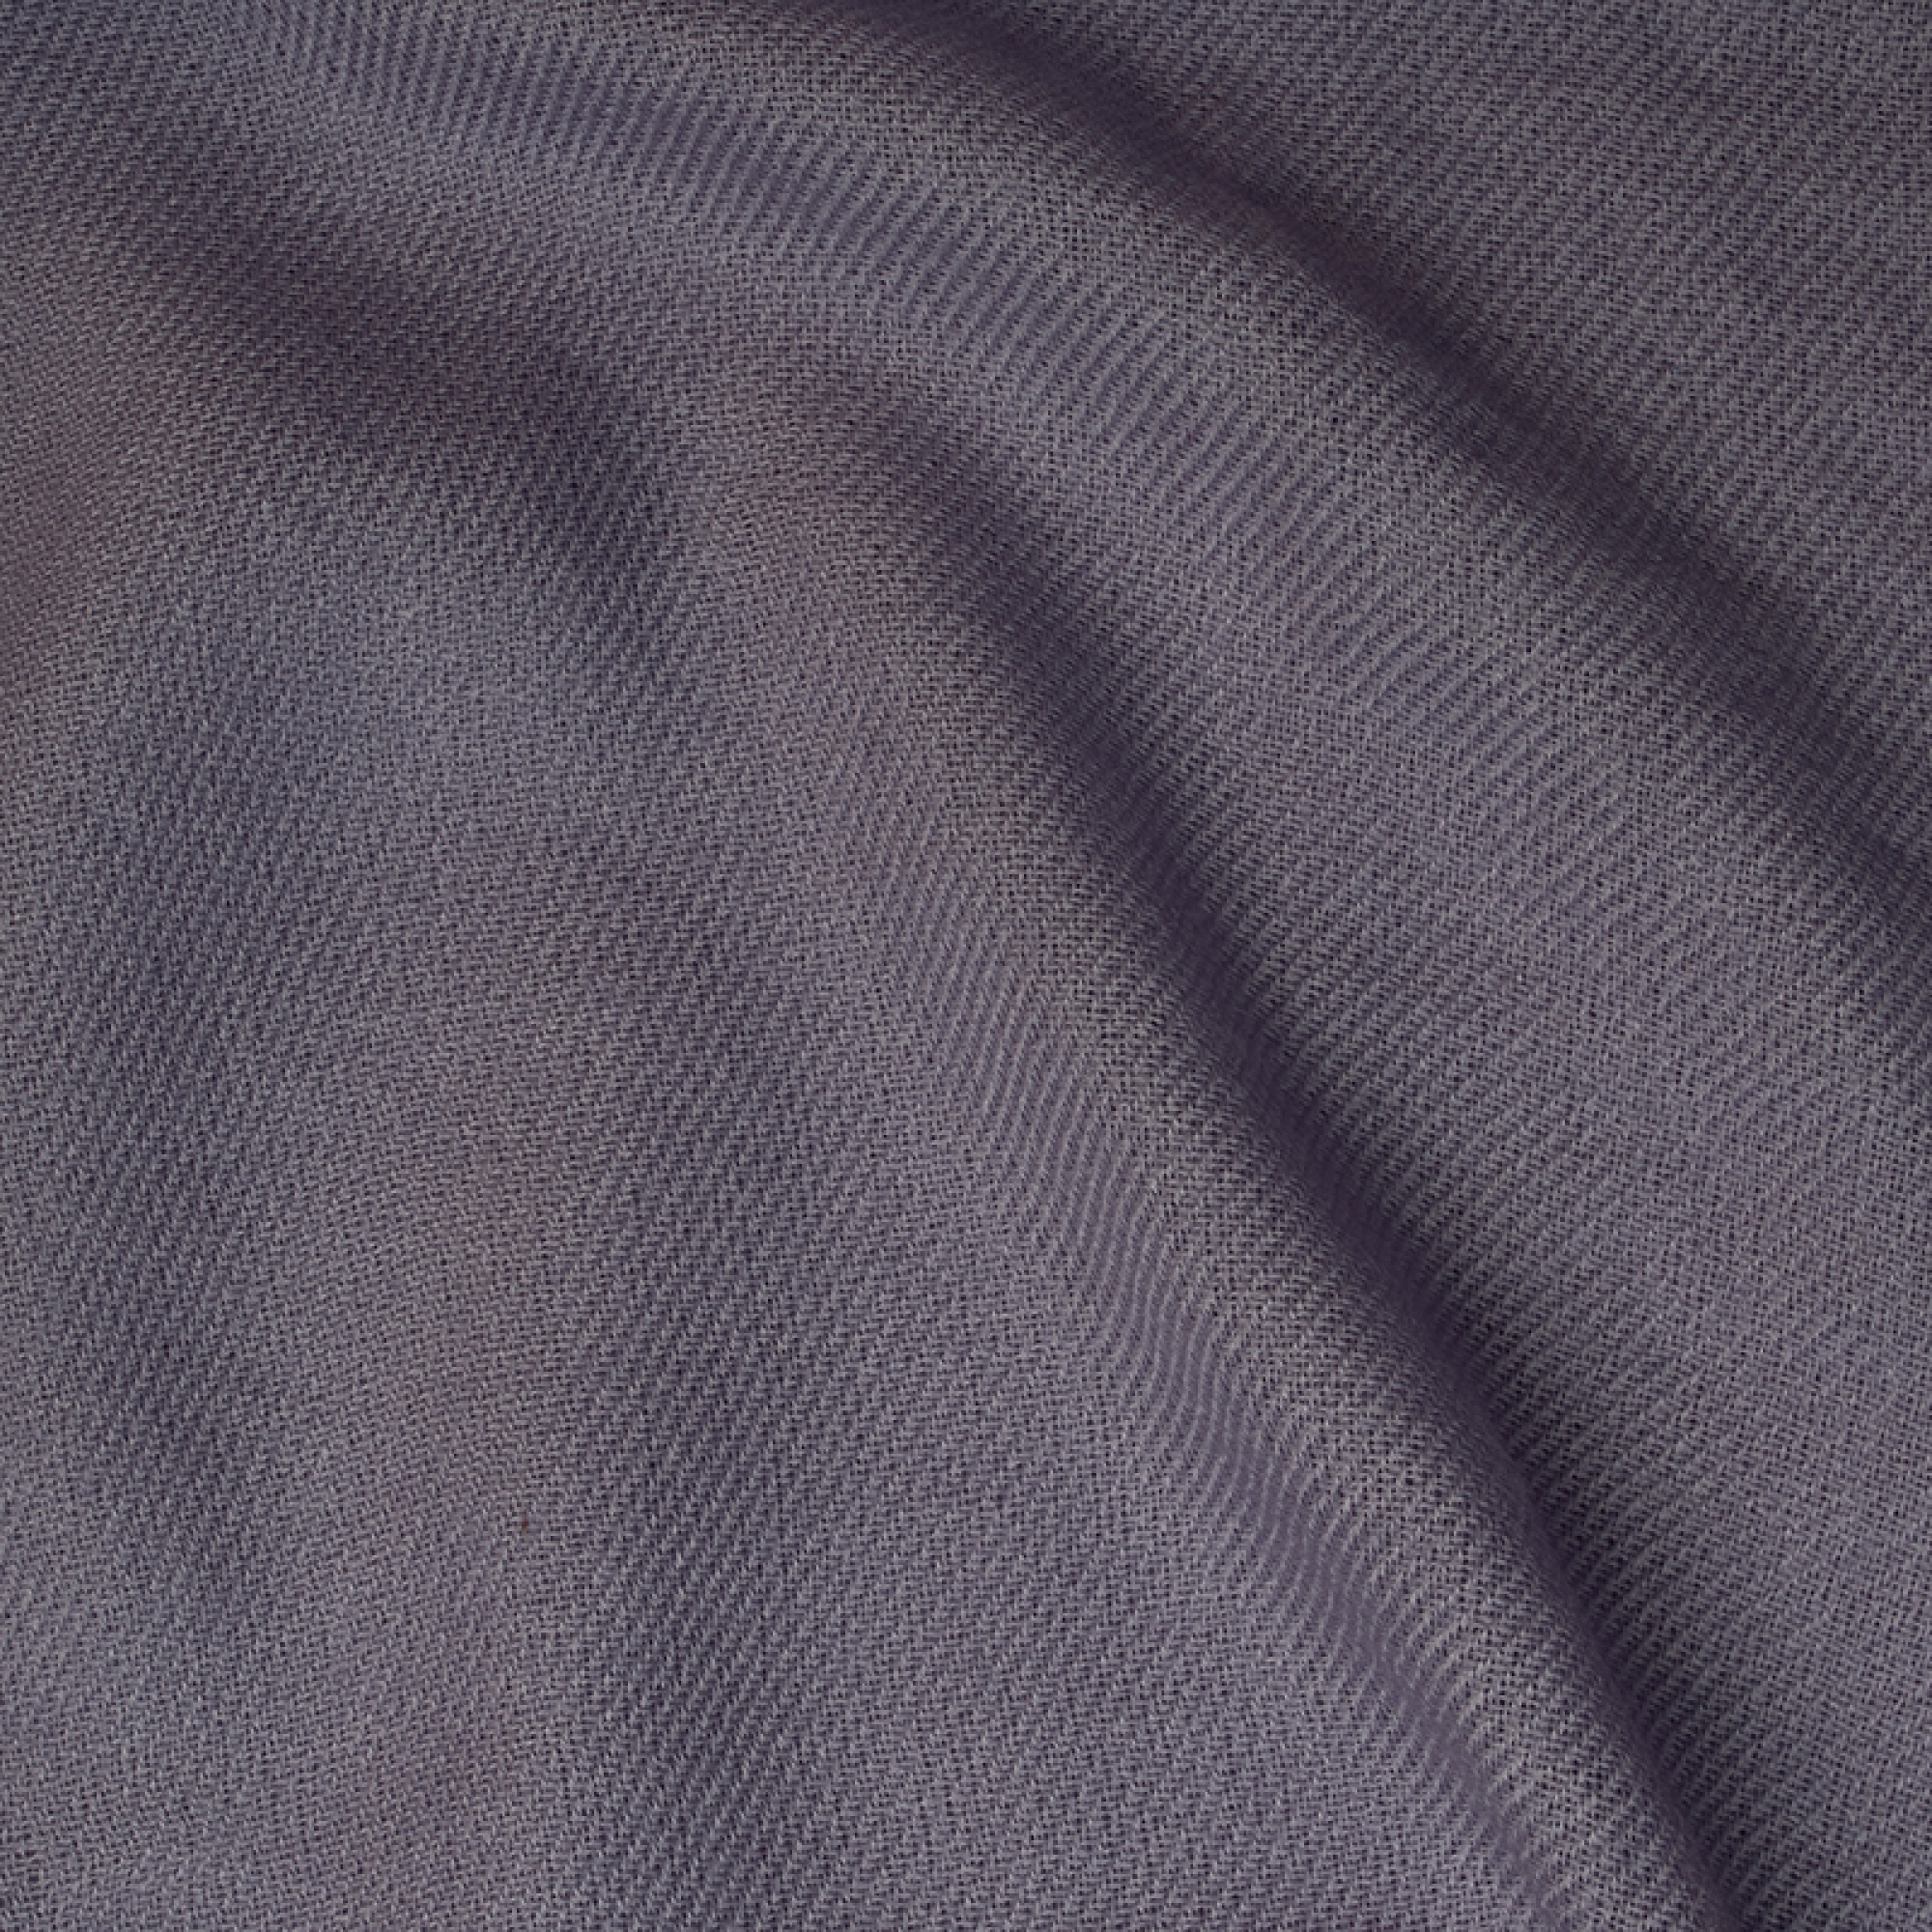 Cachemire accessoires couvertures plaids toodoo plain l 220 x 220 parme gris 220x220cm